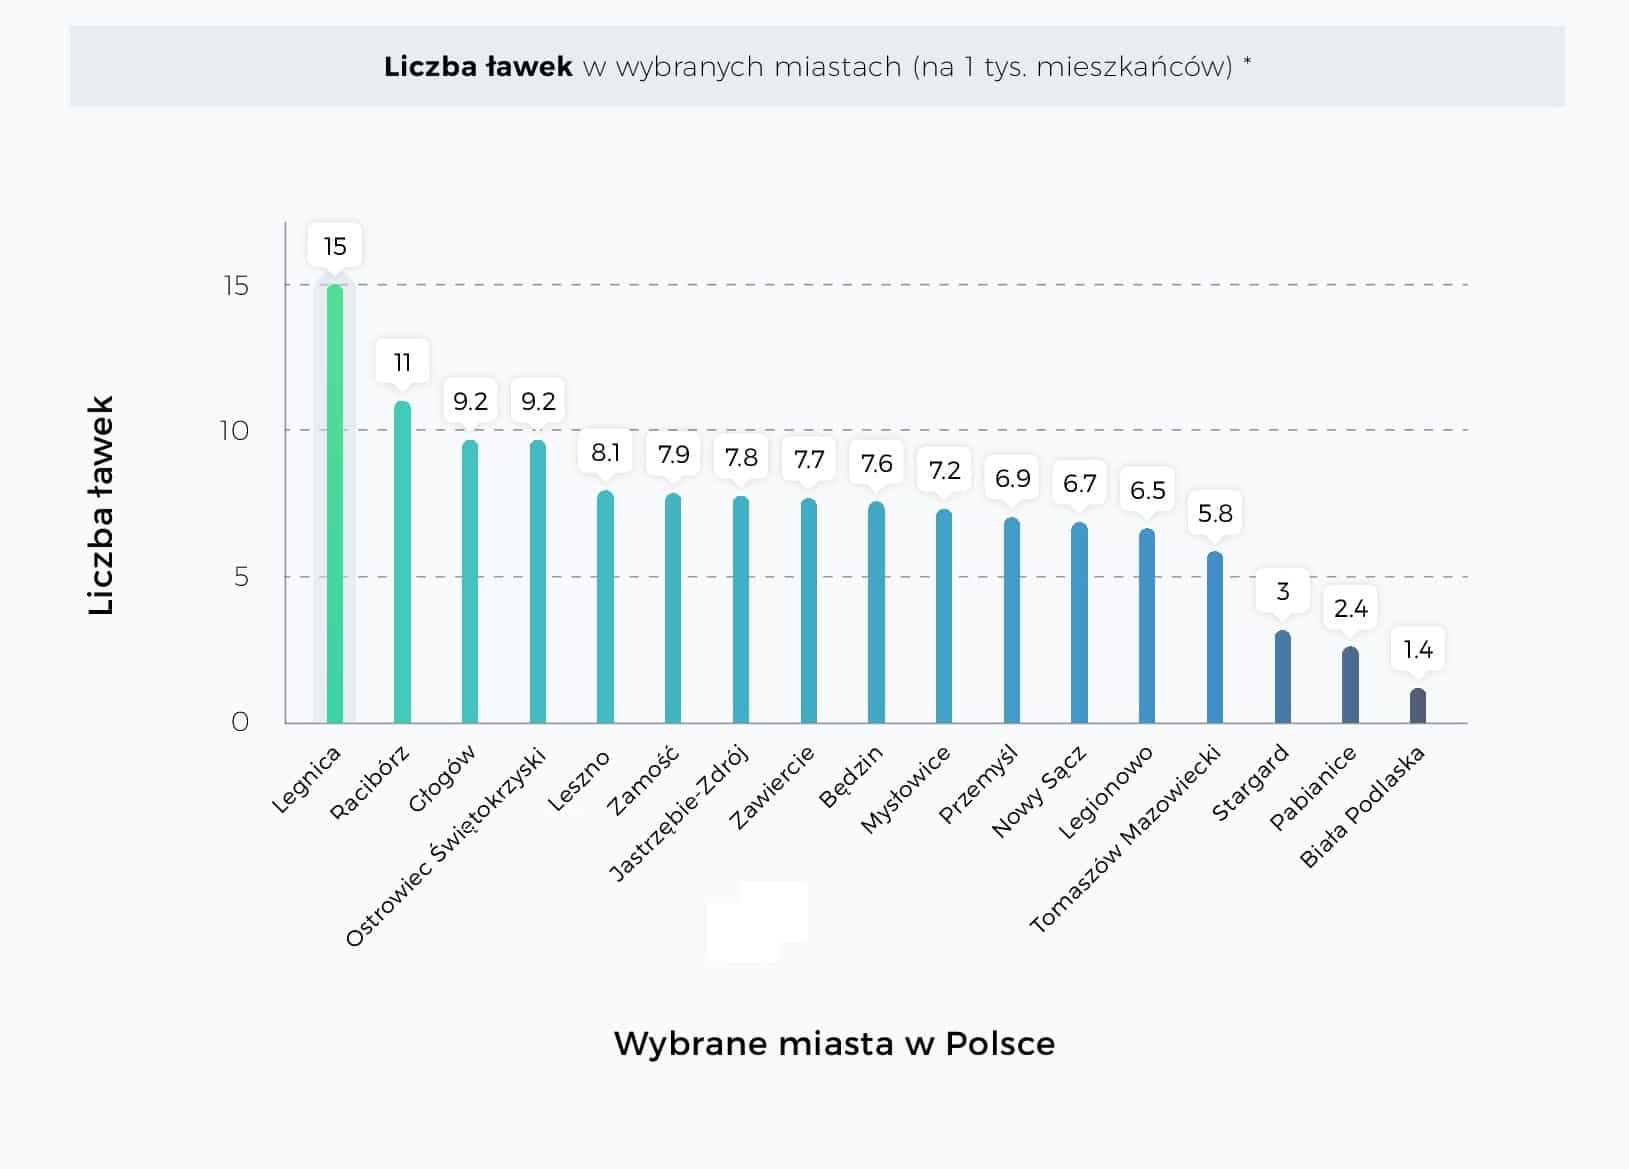 Ławki w polskich miastach – raport